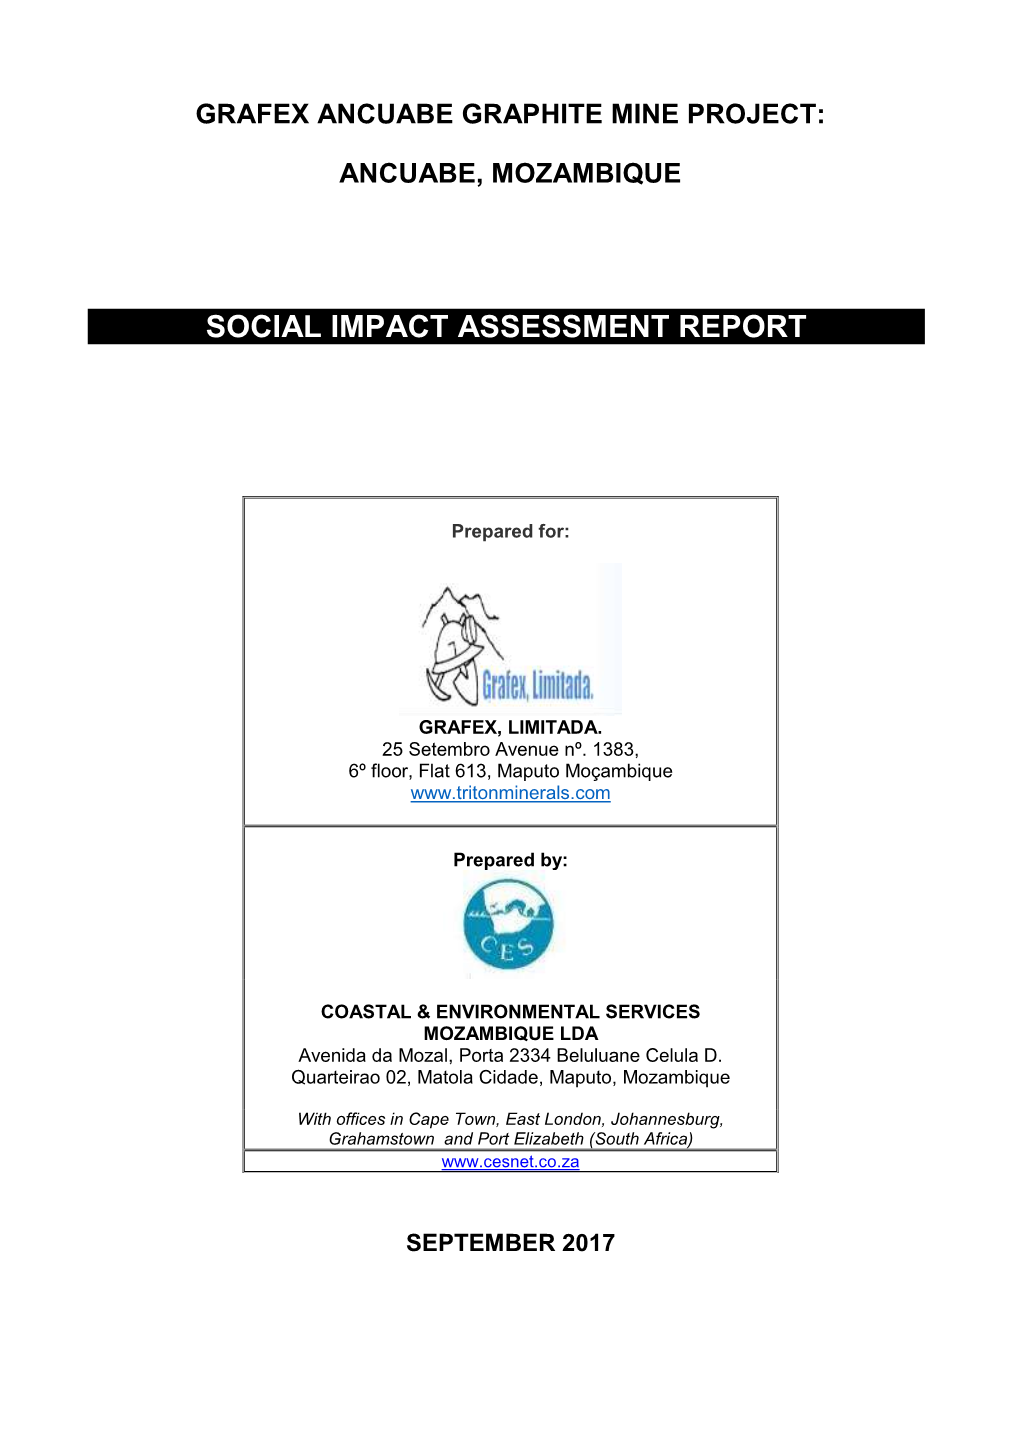 Social Impact Assessment Report